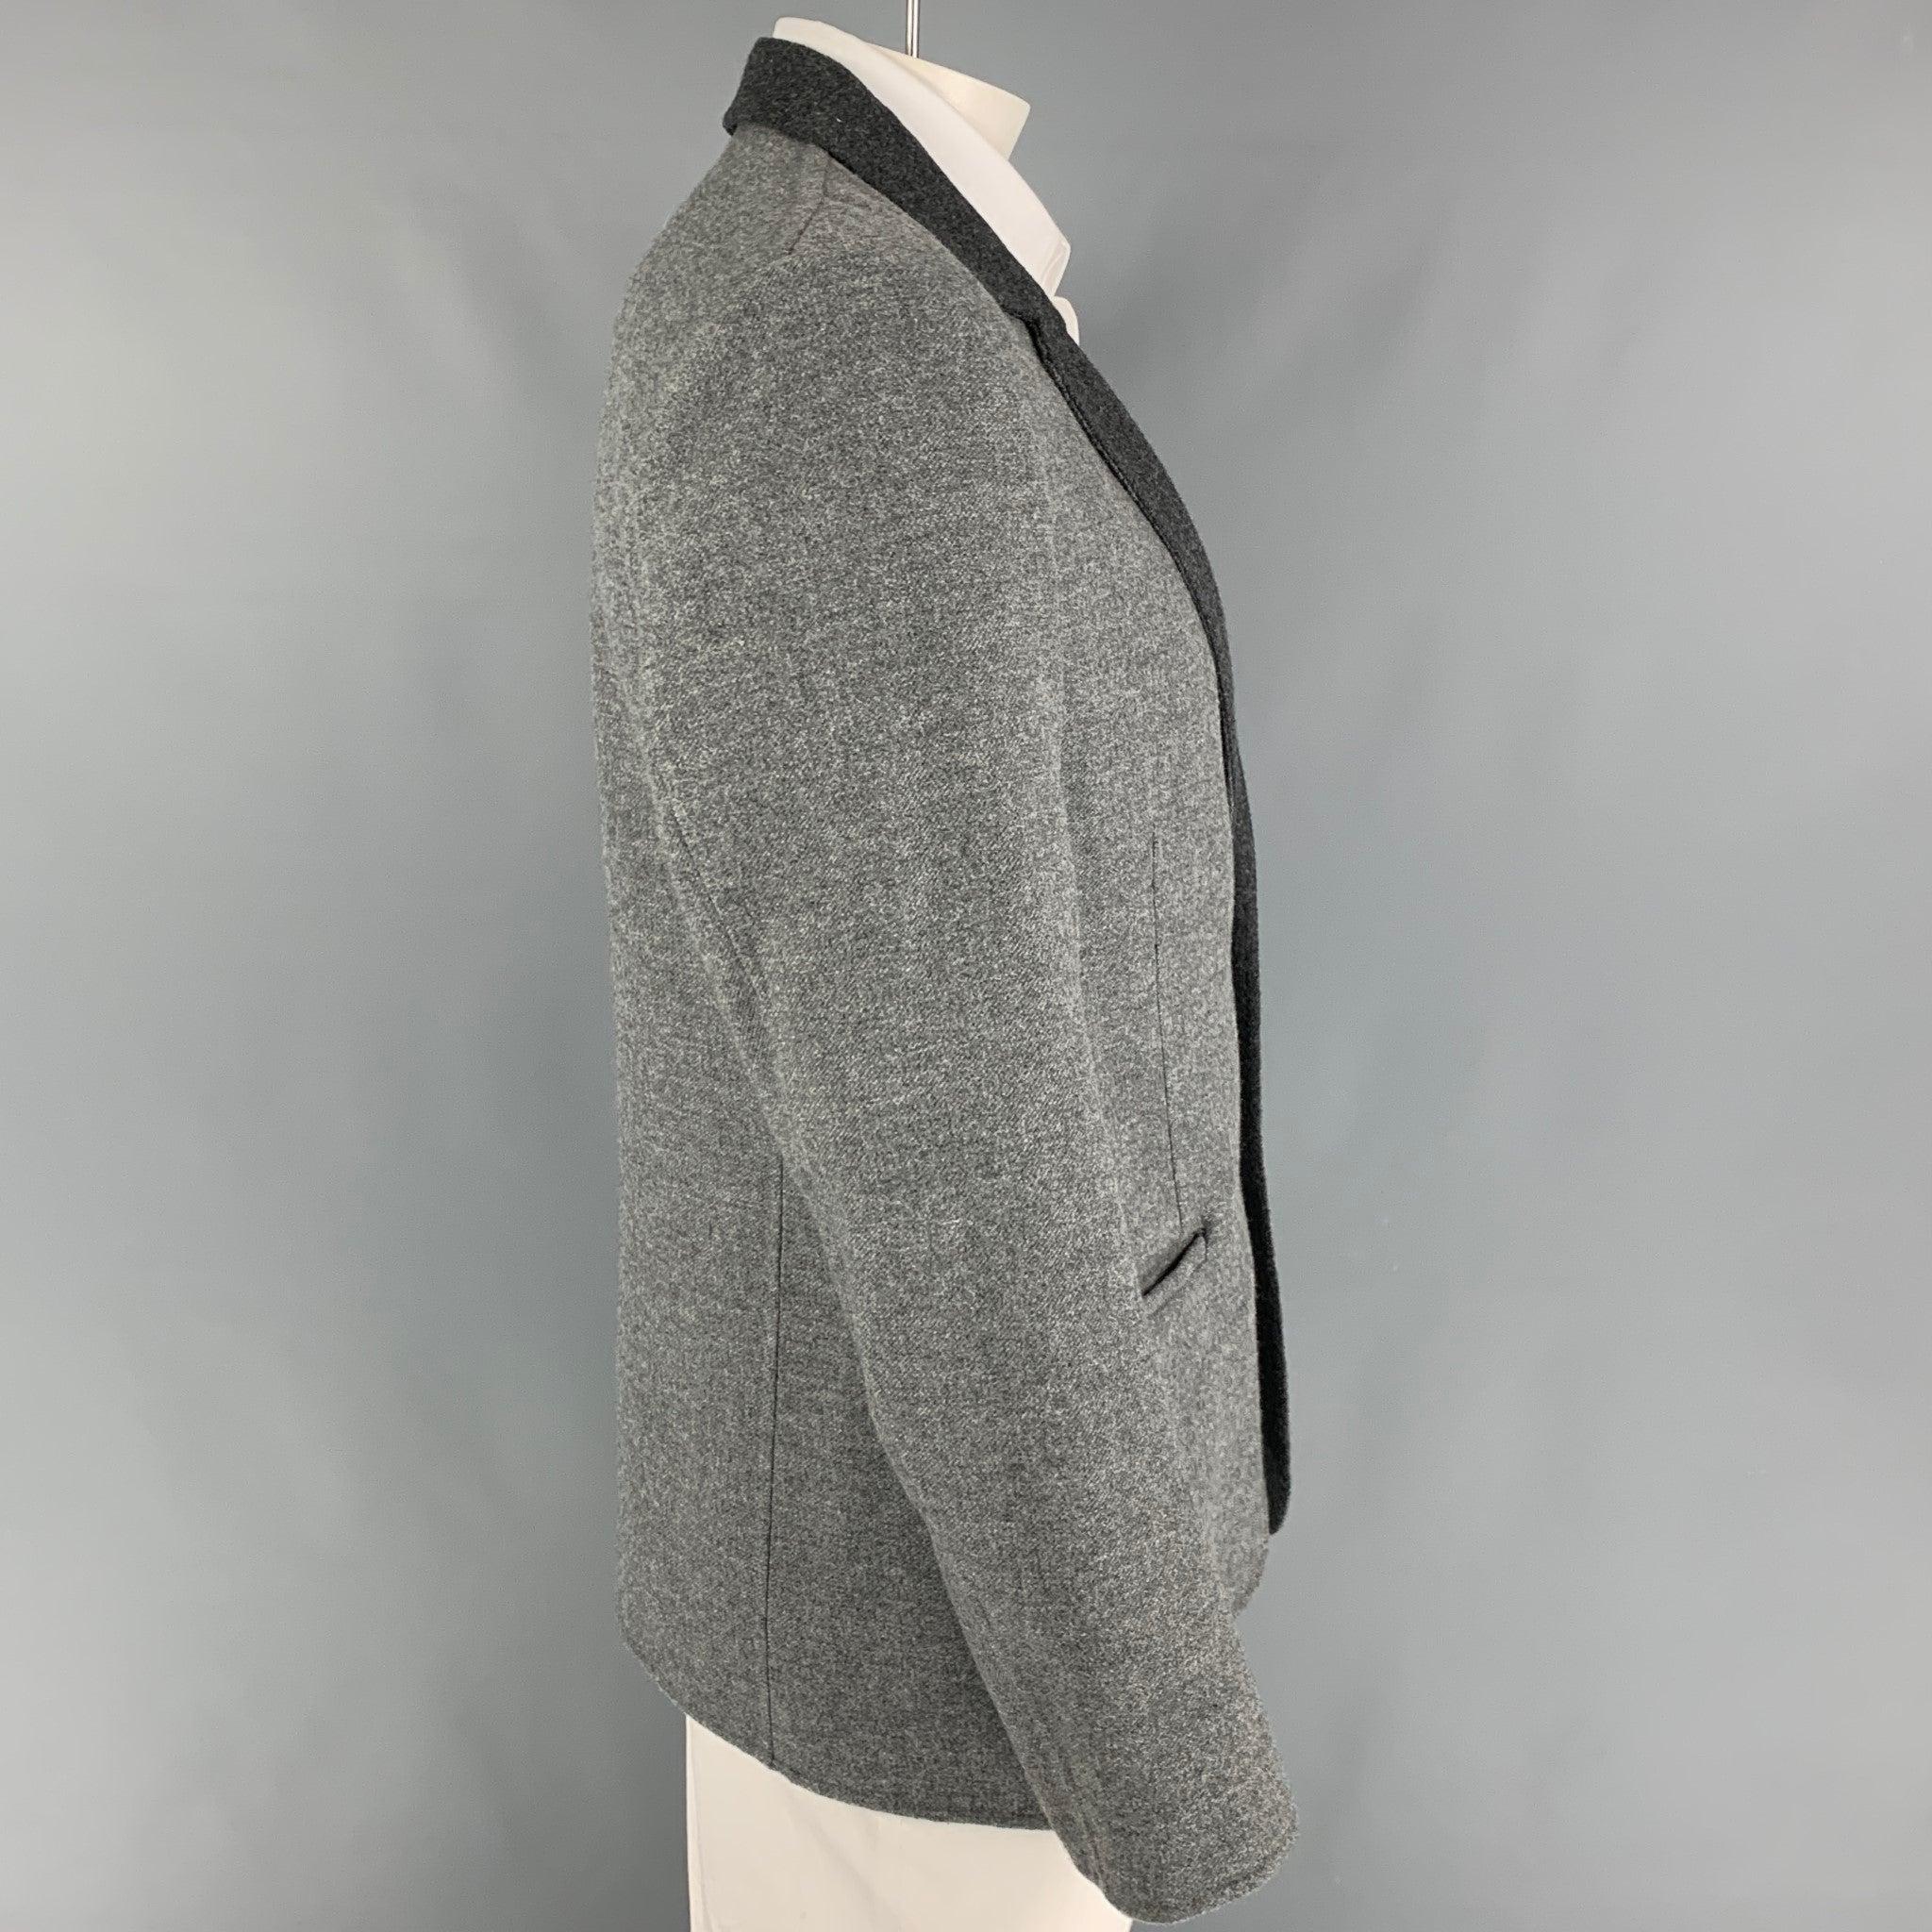 Manteau de sport CALVIN COLLECTION en laine grise et anthracite avec revers à cran, poches fendues, simple fente au dos et double boutonnage. Fabriquées en Italie.
Excellent
Etat d'occasion. 

Marqué :   52/42 

Mesures : 
 
Épaule : 18.5 pouces 